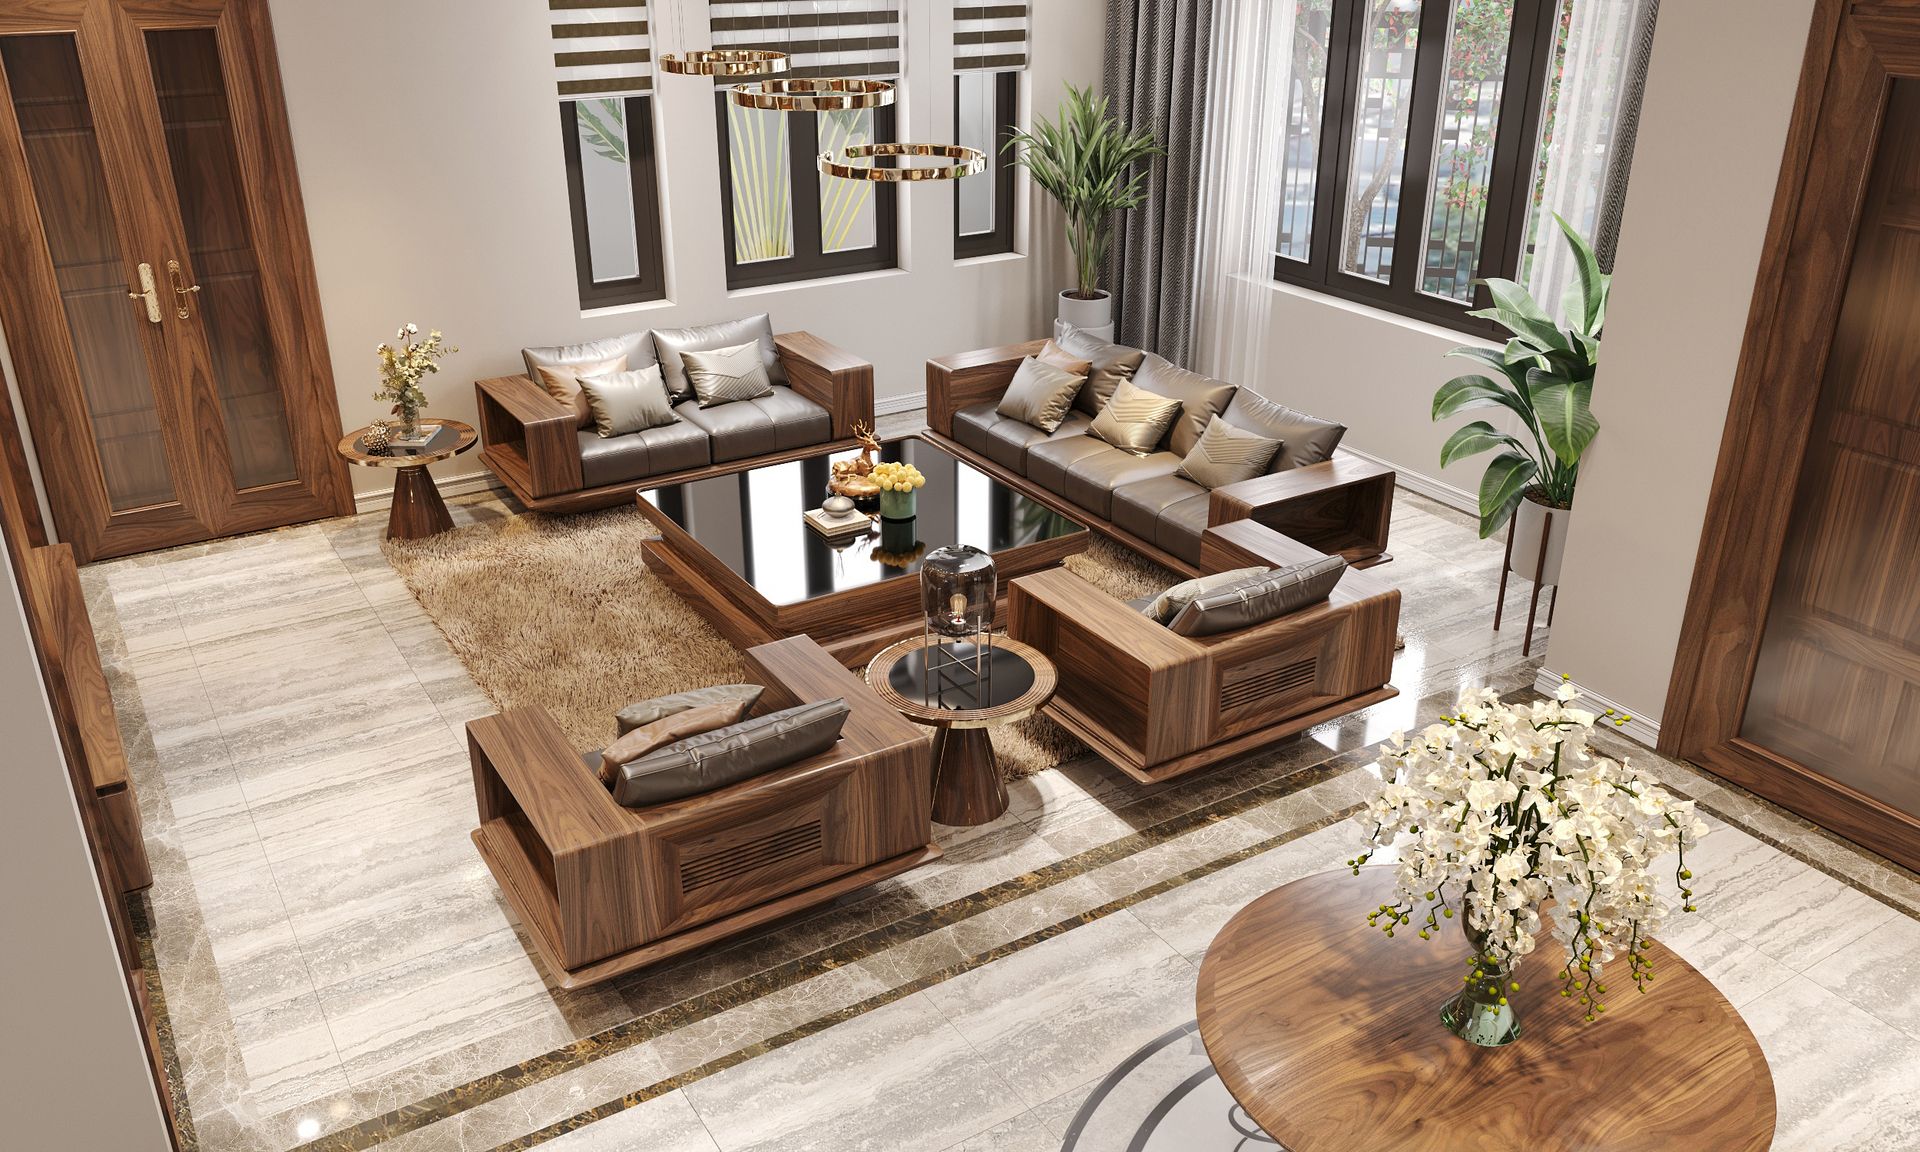 Sofa gỗ óc chó chữ U dành cho những phòng khách rộng thể hiện sự bề thế, uy nghi